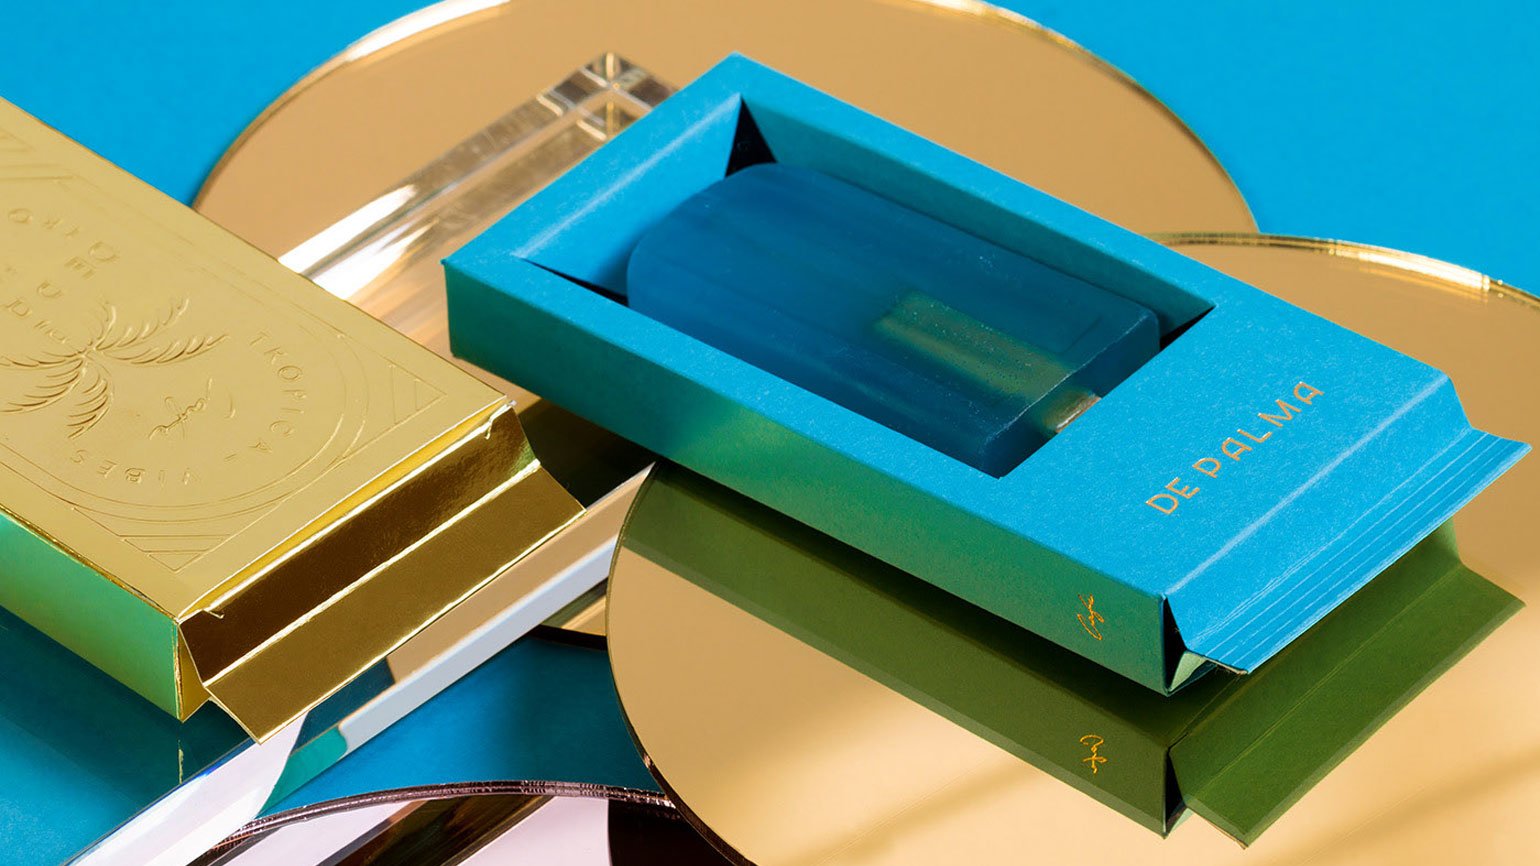 внешняя упаковка для мыла из золотого картона с тиснением и внутренняя форма из голубого картона с печатью золотой фольгой